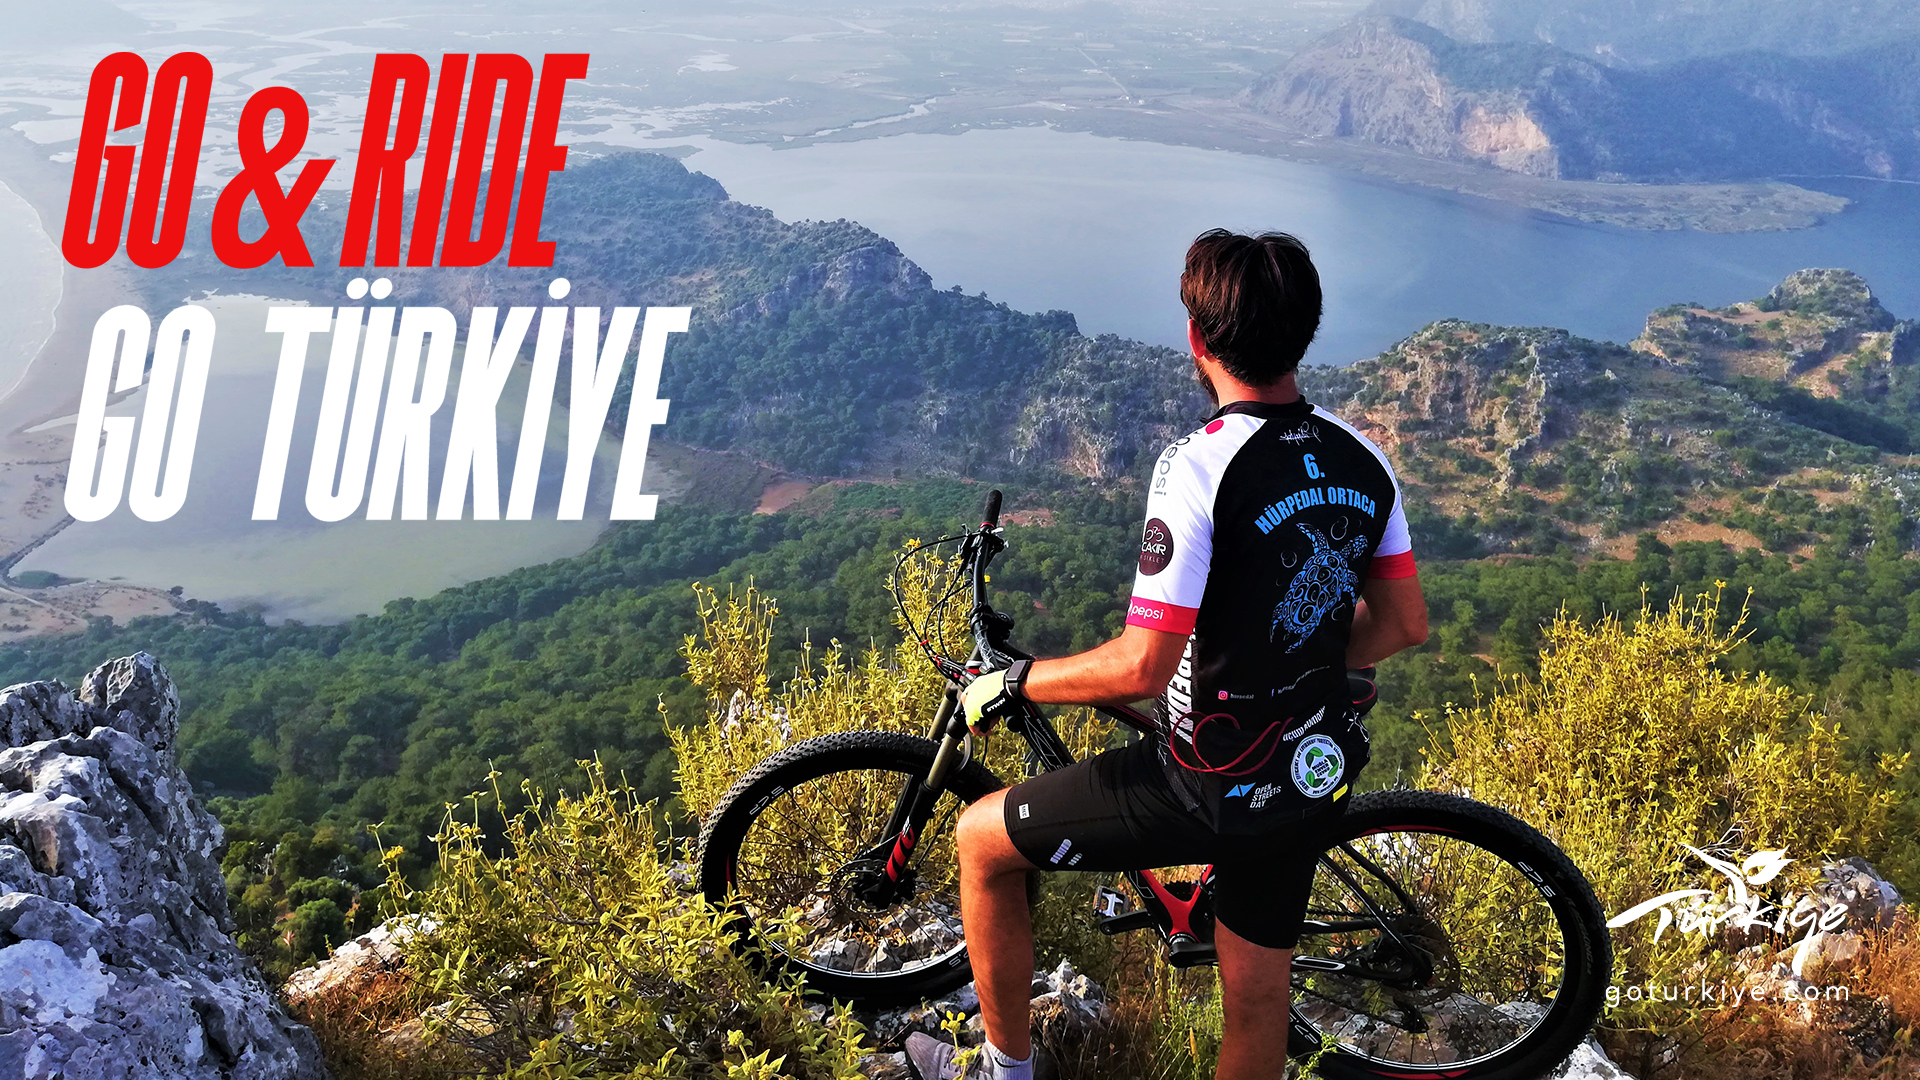 【トルコ共和国大使館・文化広報参事官室】
～トルコのサイクリングロード5選～
文化遺産、ユニークな自然や都市を自転車で巡る旅を提案 – Net24